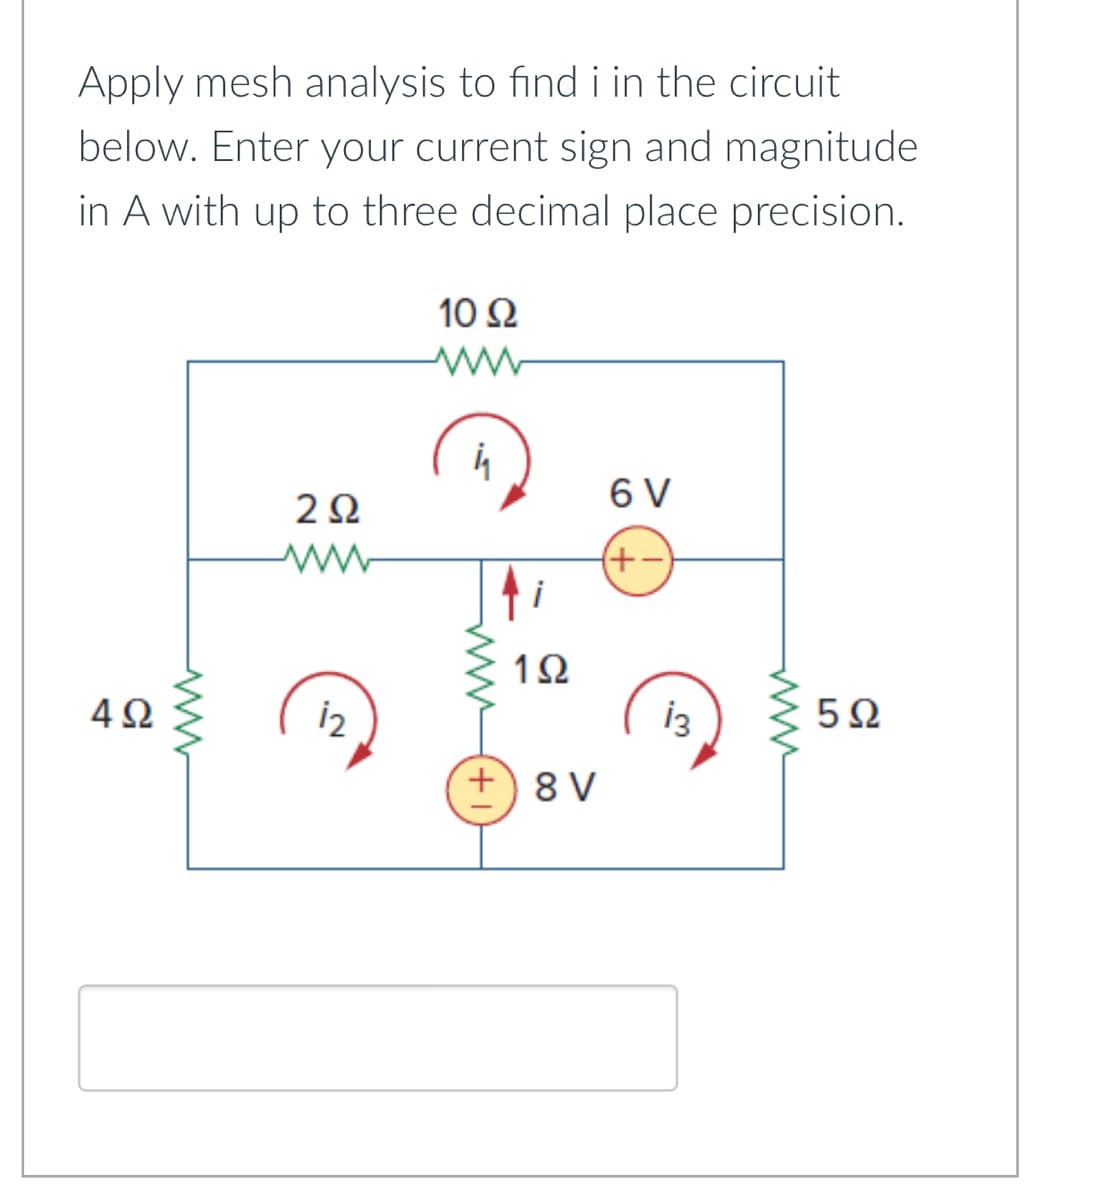 ΔΩ
Apply mesh analysis to find i in the circuit
below. Enter your current sign and magnitude
in A with up to three decimal place precision.
10 Ω
ww
202
6 V
12
心
www
1Ω
+ 8V
(+−)
13
www
502